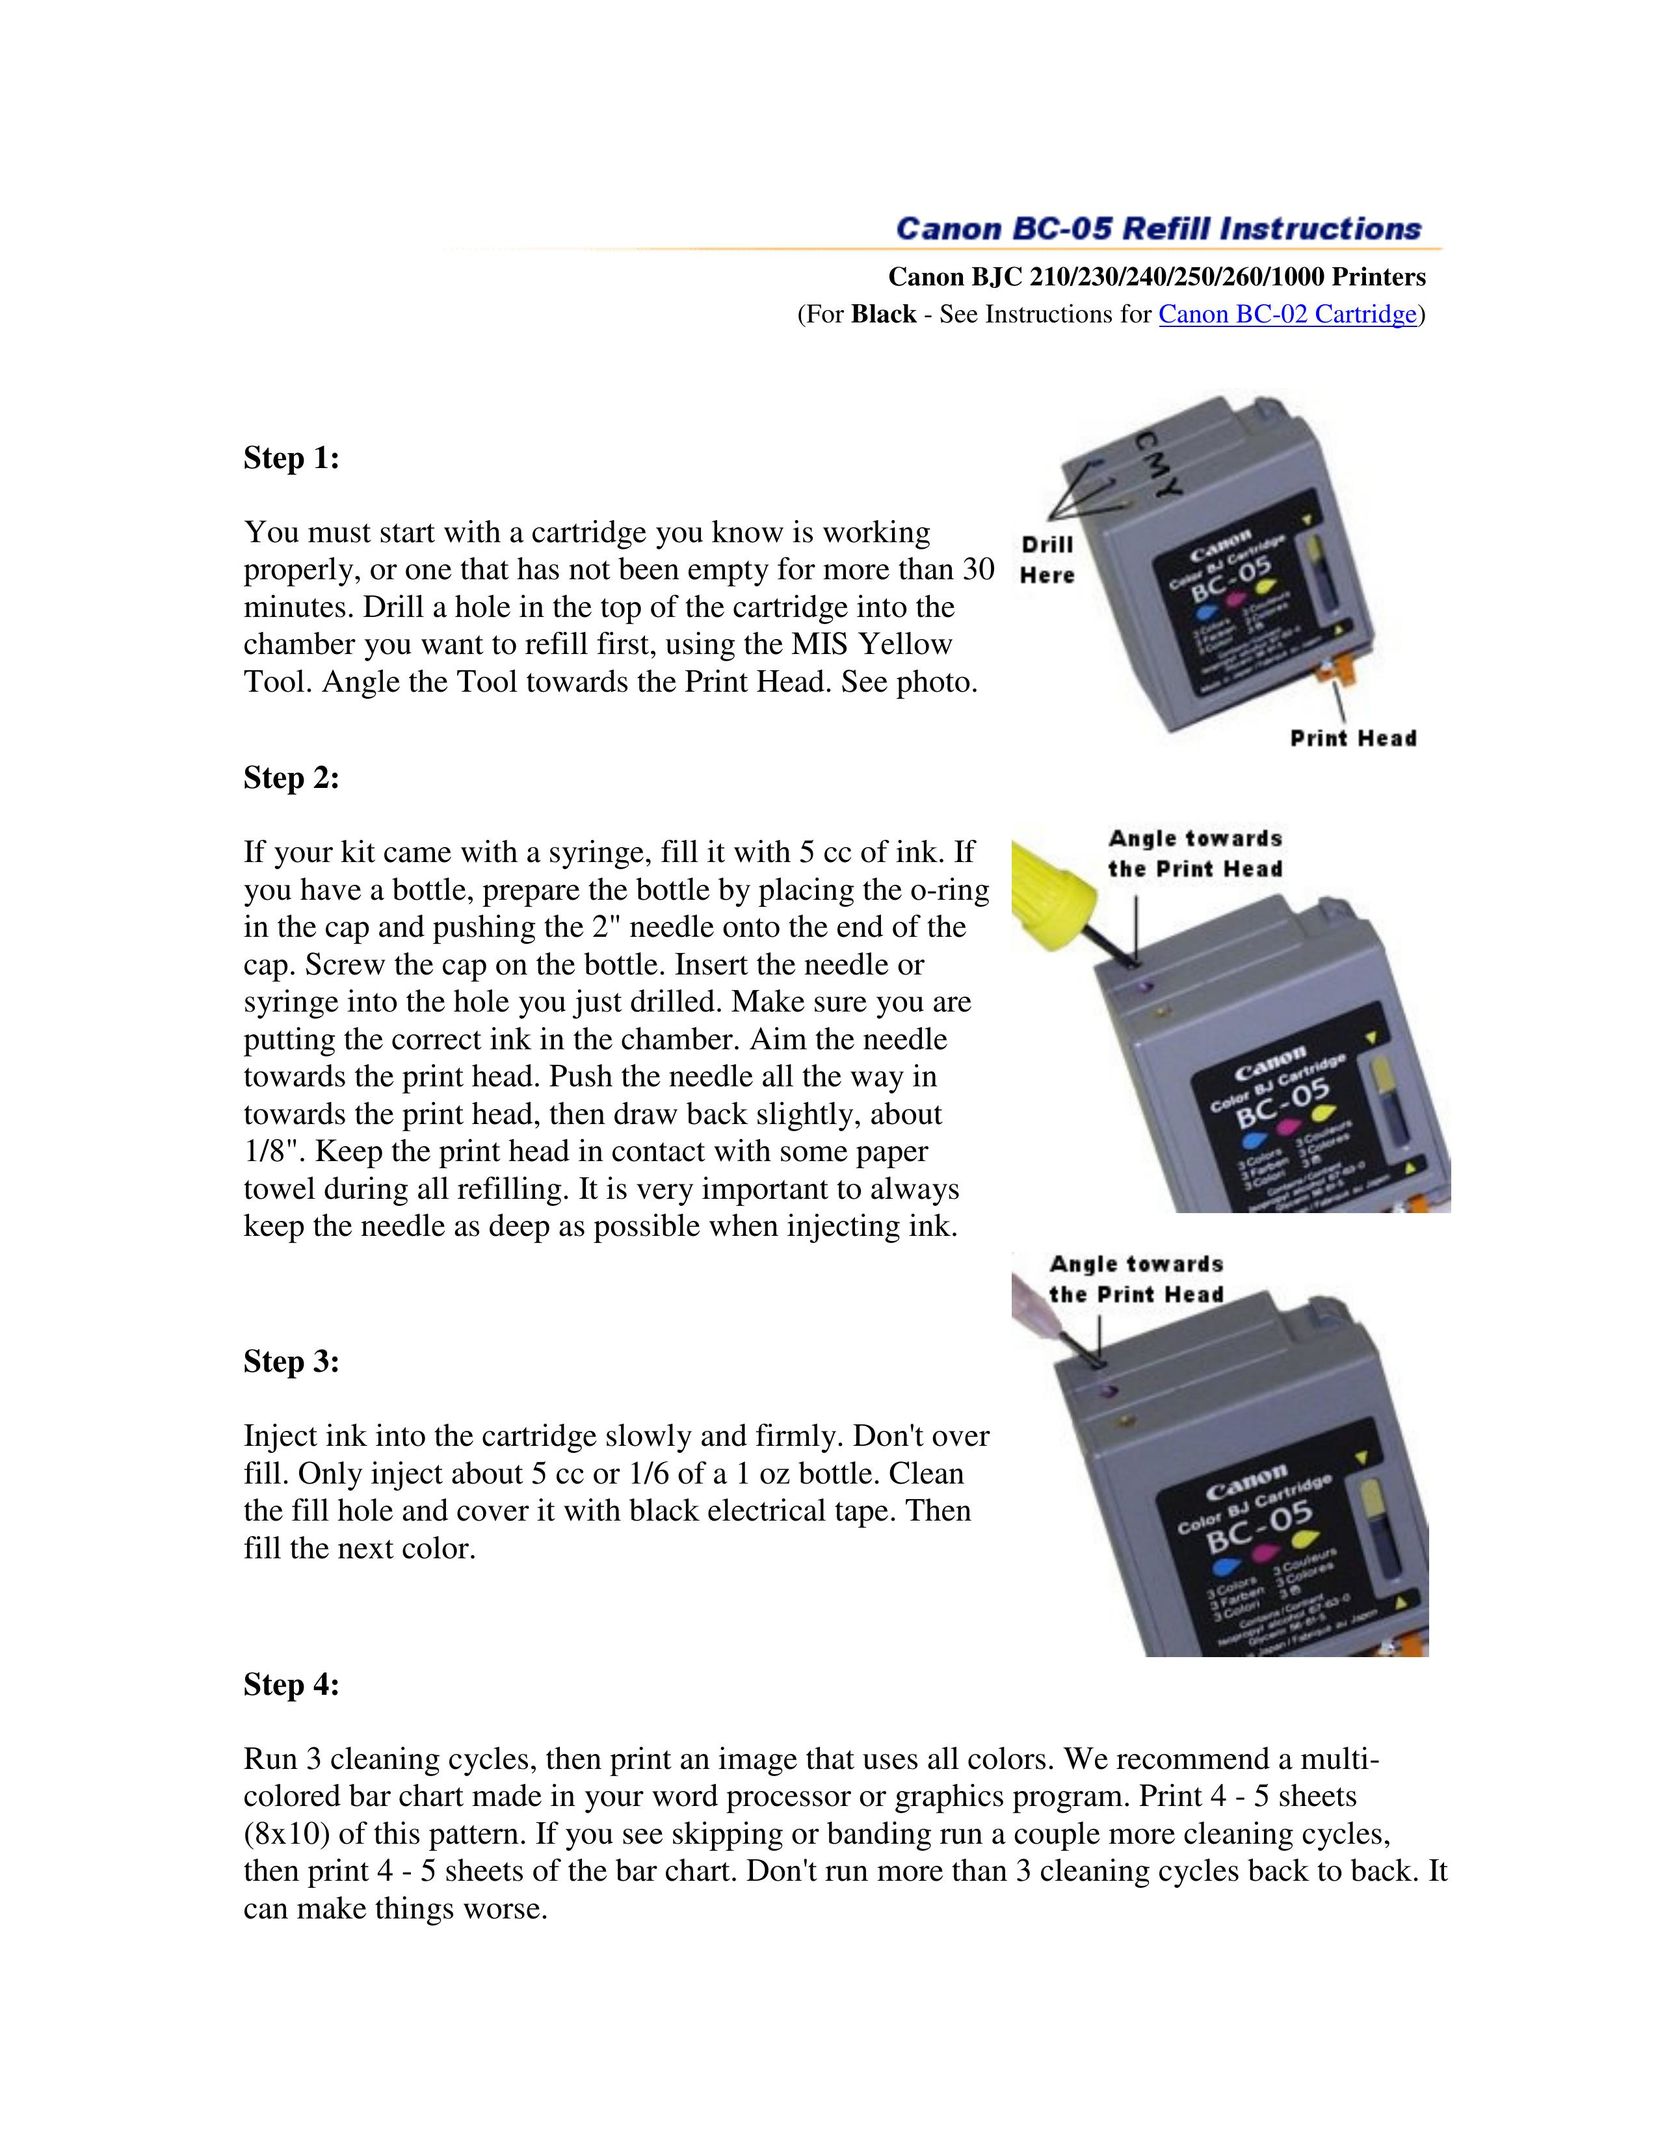 Canon BC-05 Printer Accessories User Manual